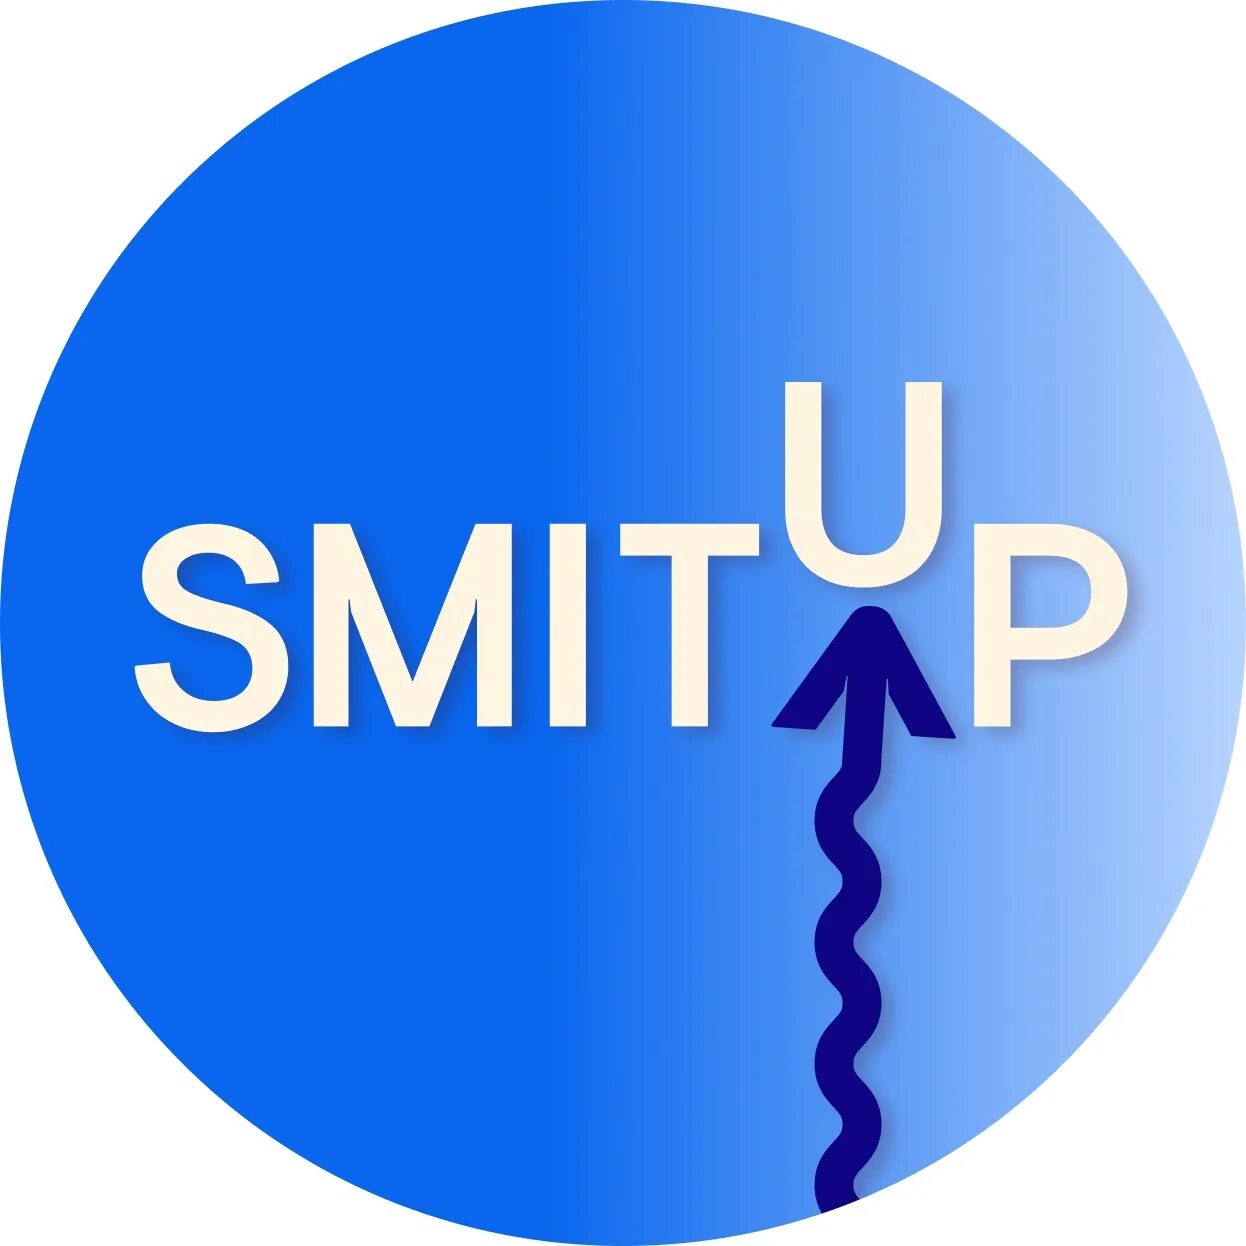 SMITUP логотип. Школа SMITUP. Школа Эли Смит логотип. Презентация SMITUP.